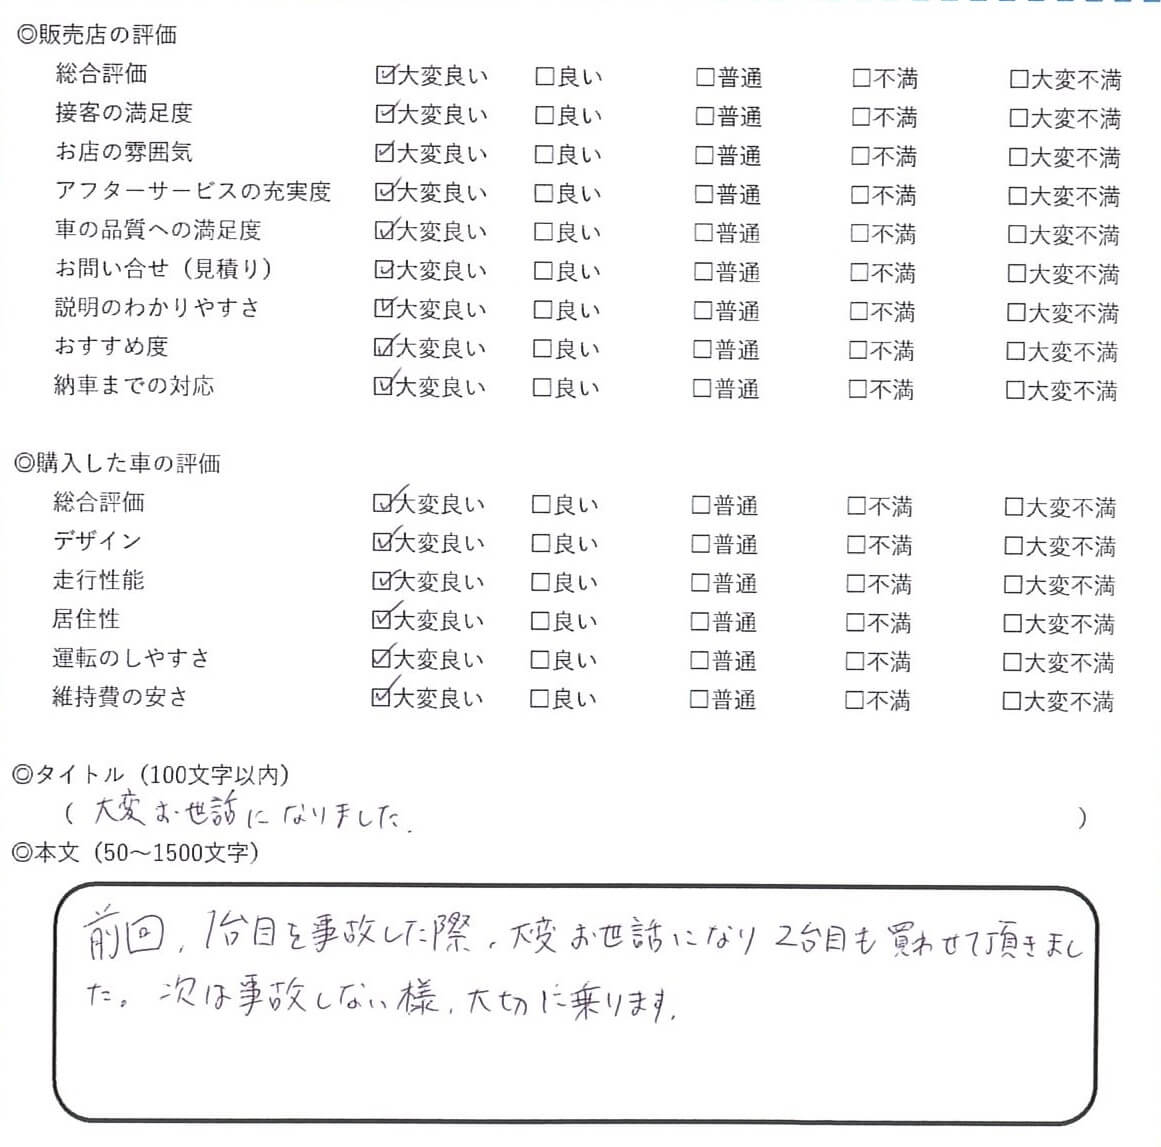 2020/02/01 - れんちゃん - 日産・スカイライン